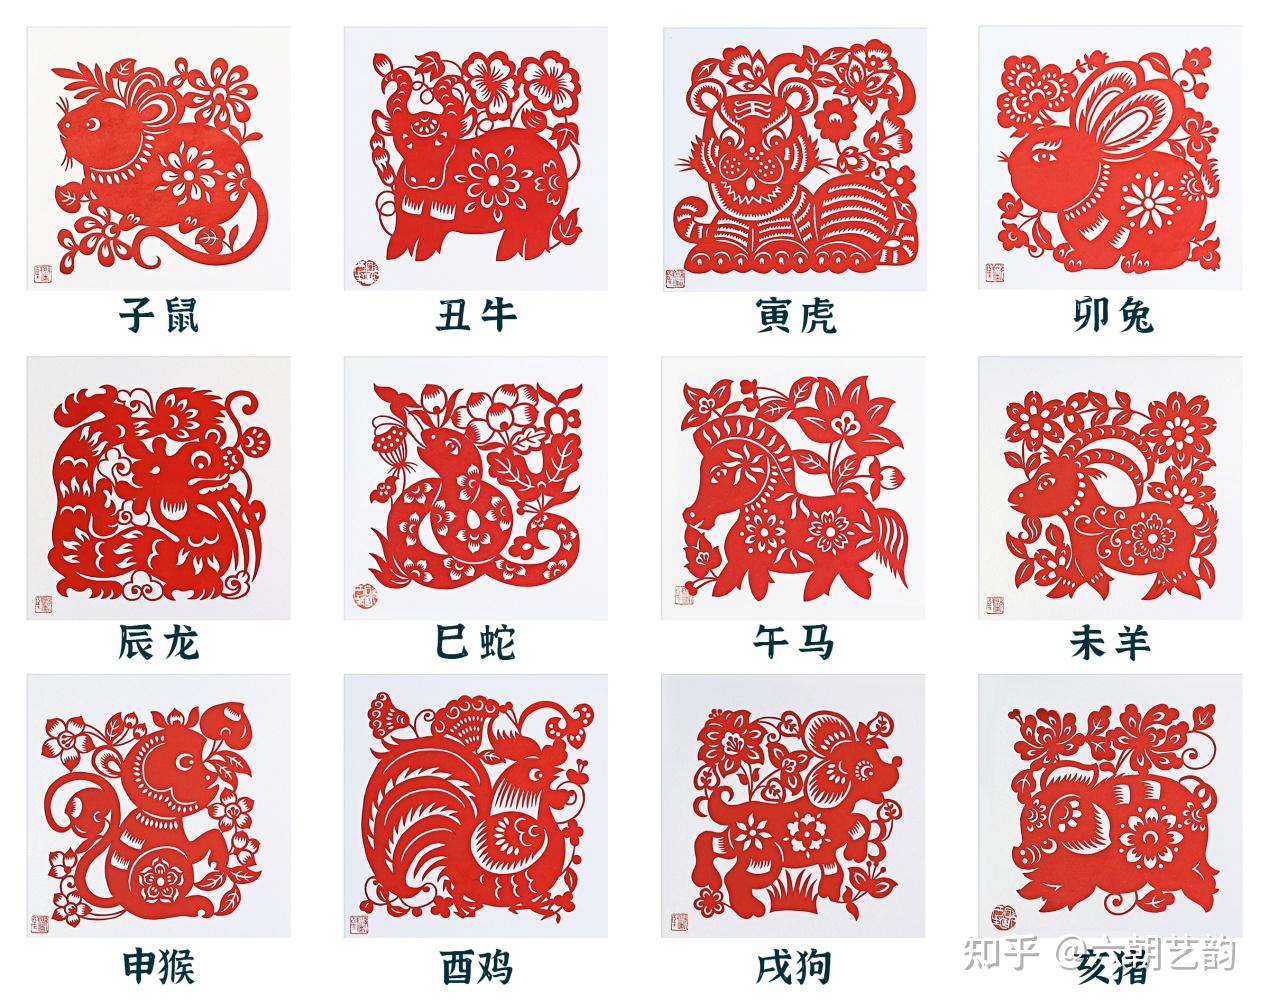 艺元科技联合全线智慧发行南京剪纸十二生肖系列数字藏品